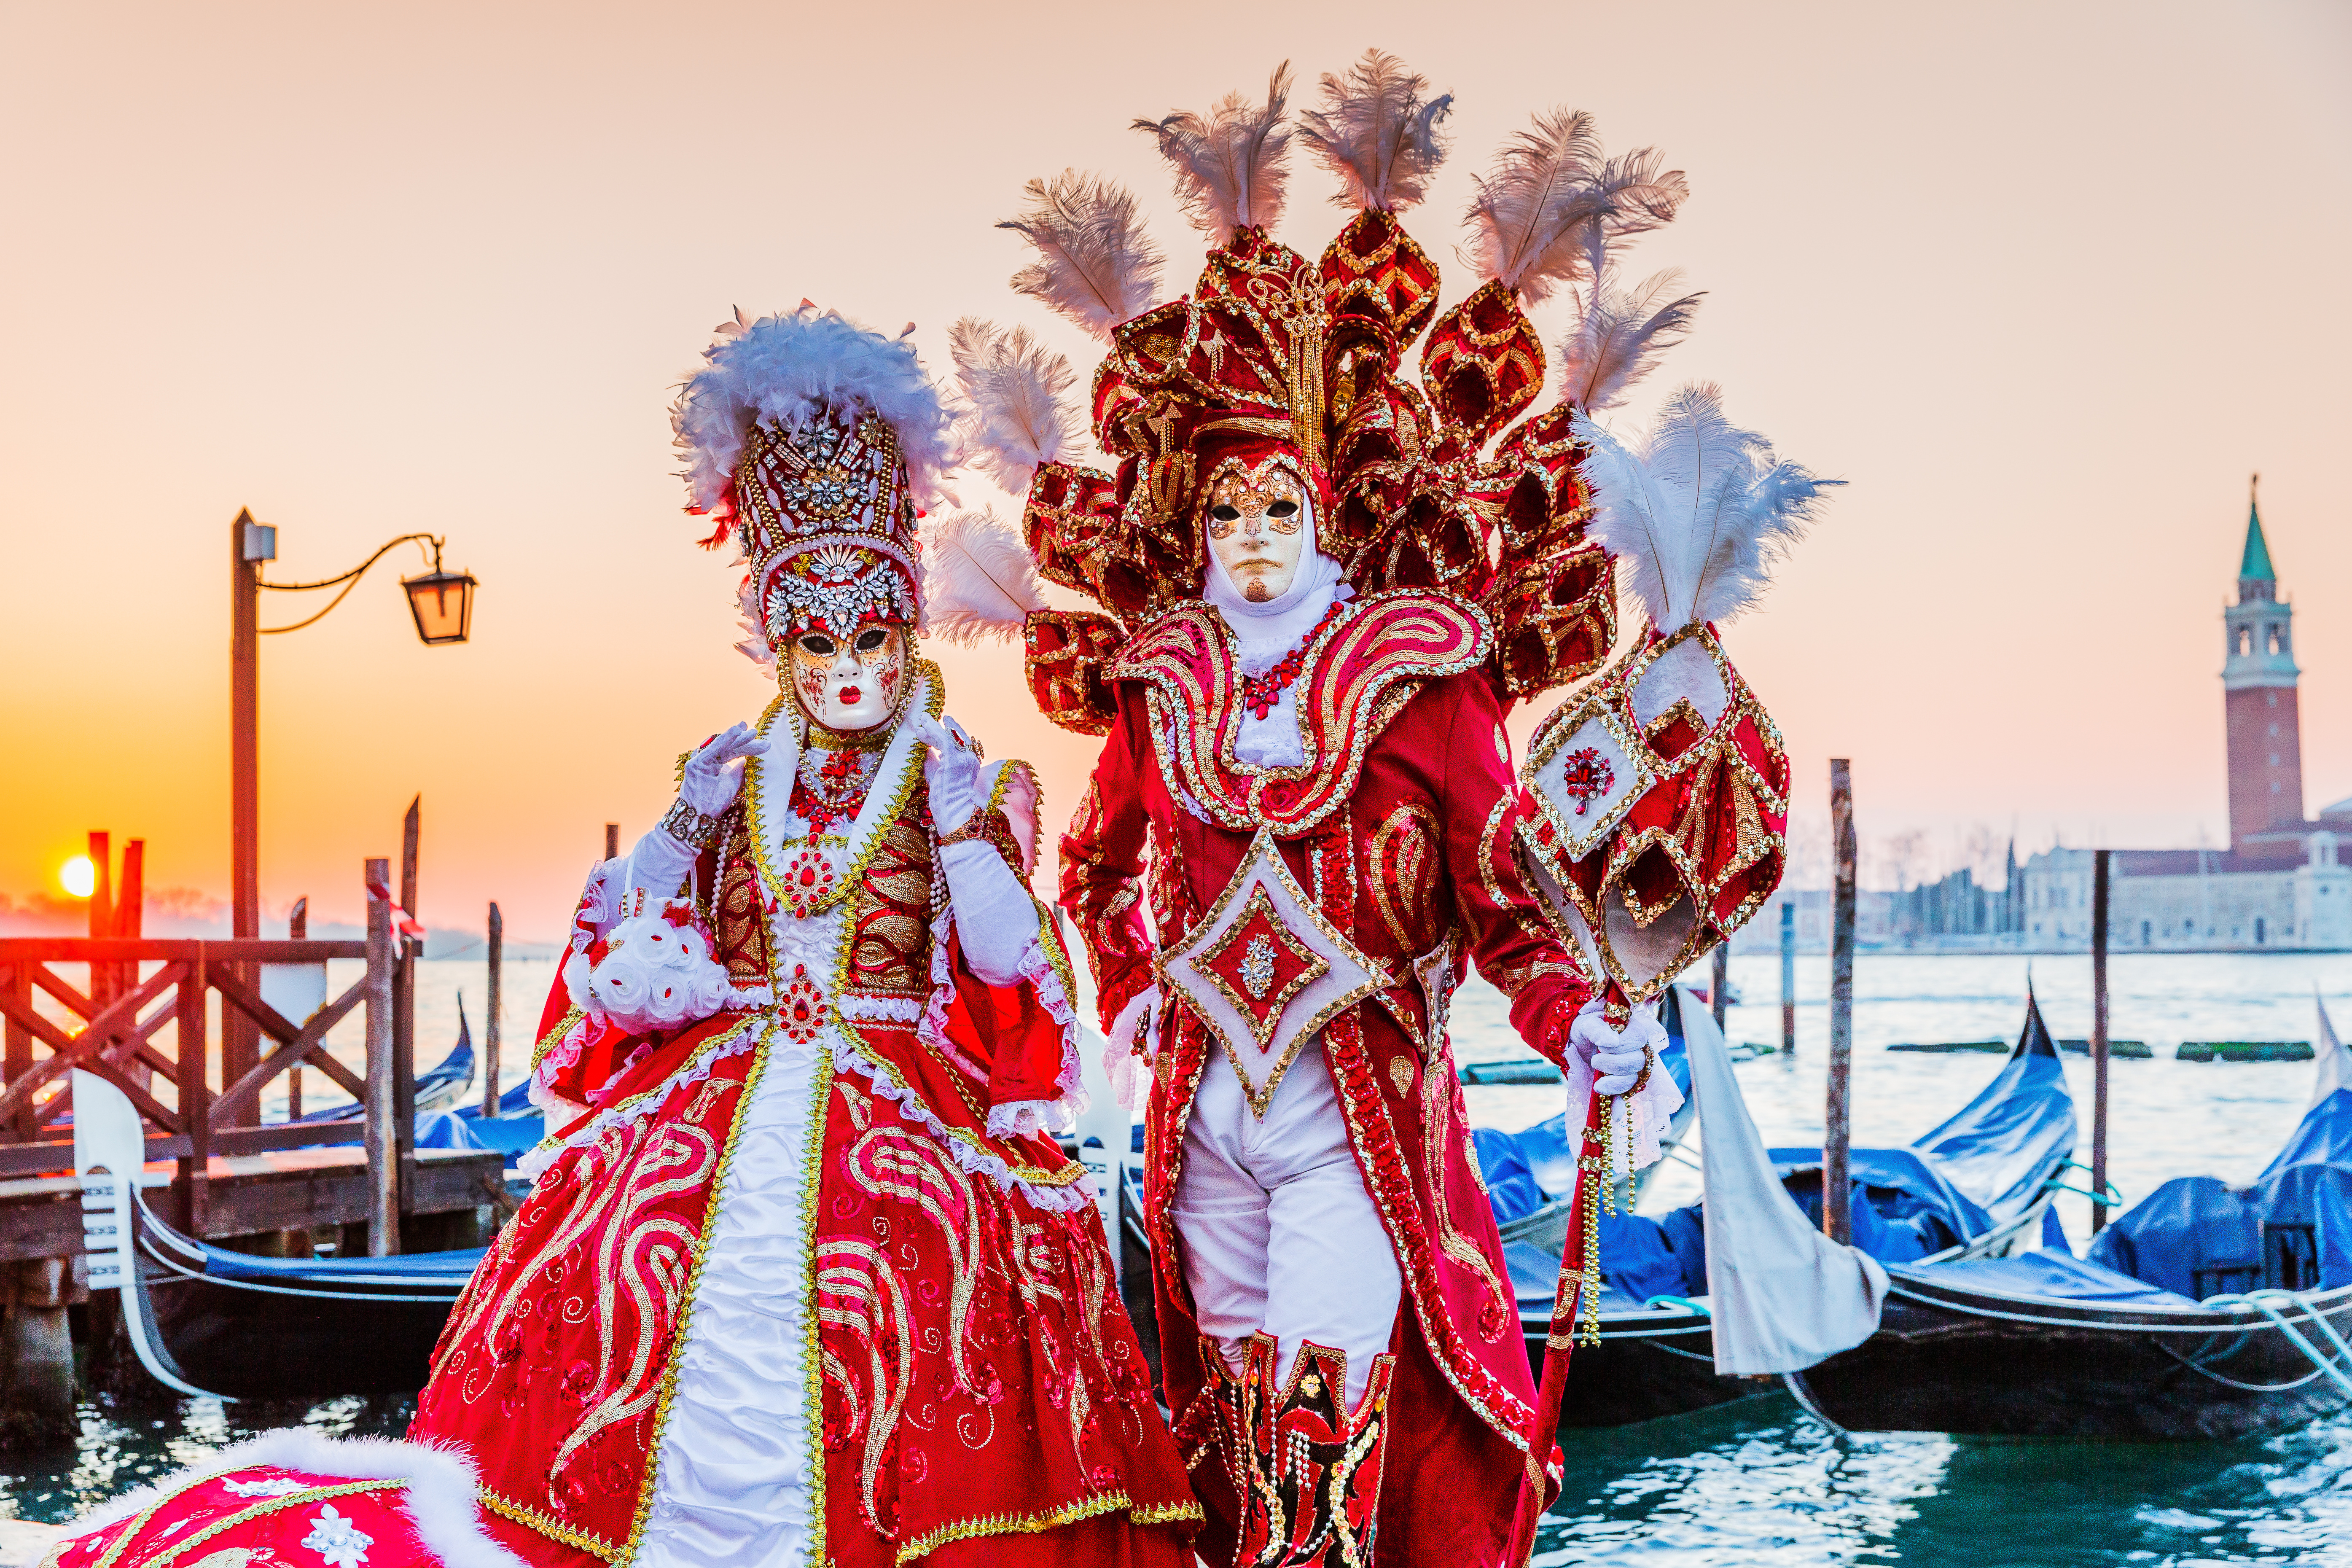 https://media.abcsalles.com/images/1/articles/original/835413/le-carnaval-de-venise-et-histoire-fascinante-de-ses-masques-millenaires.jpeg